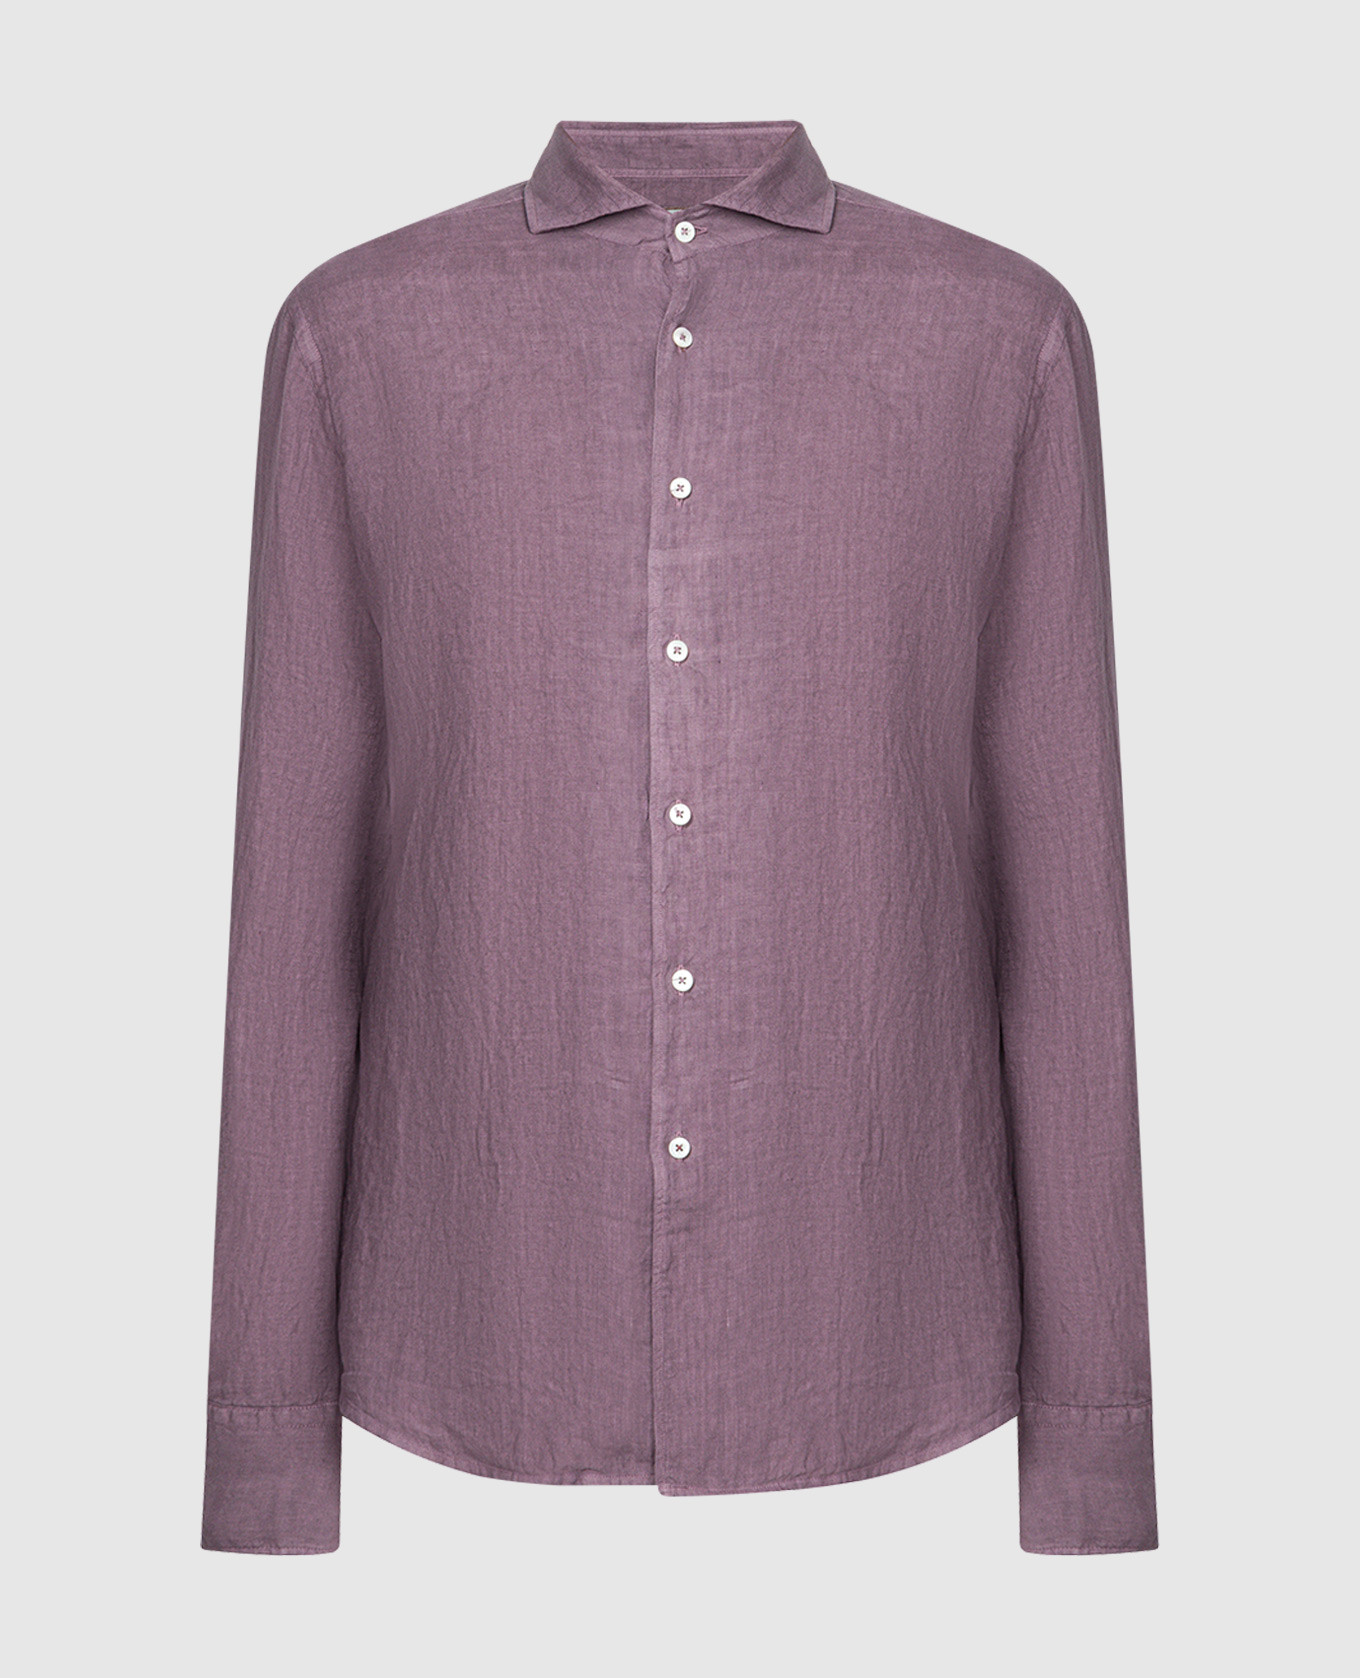 Purple straight-cut shirt made of linen